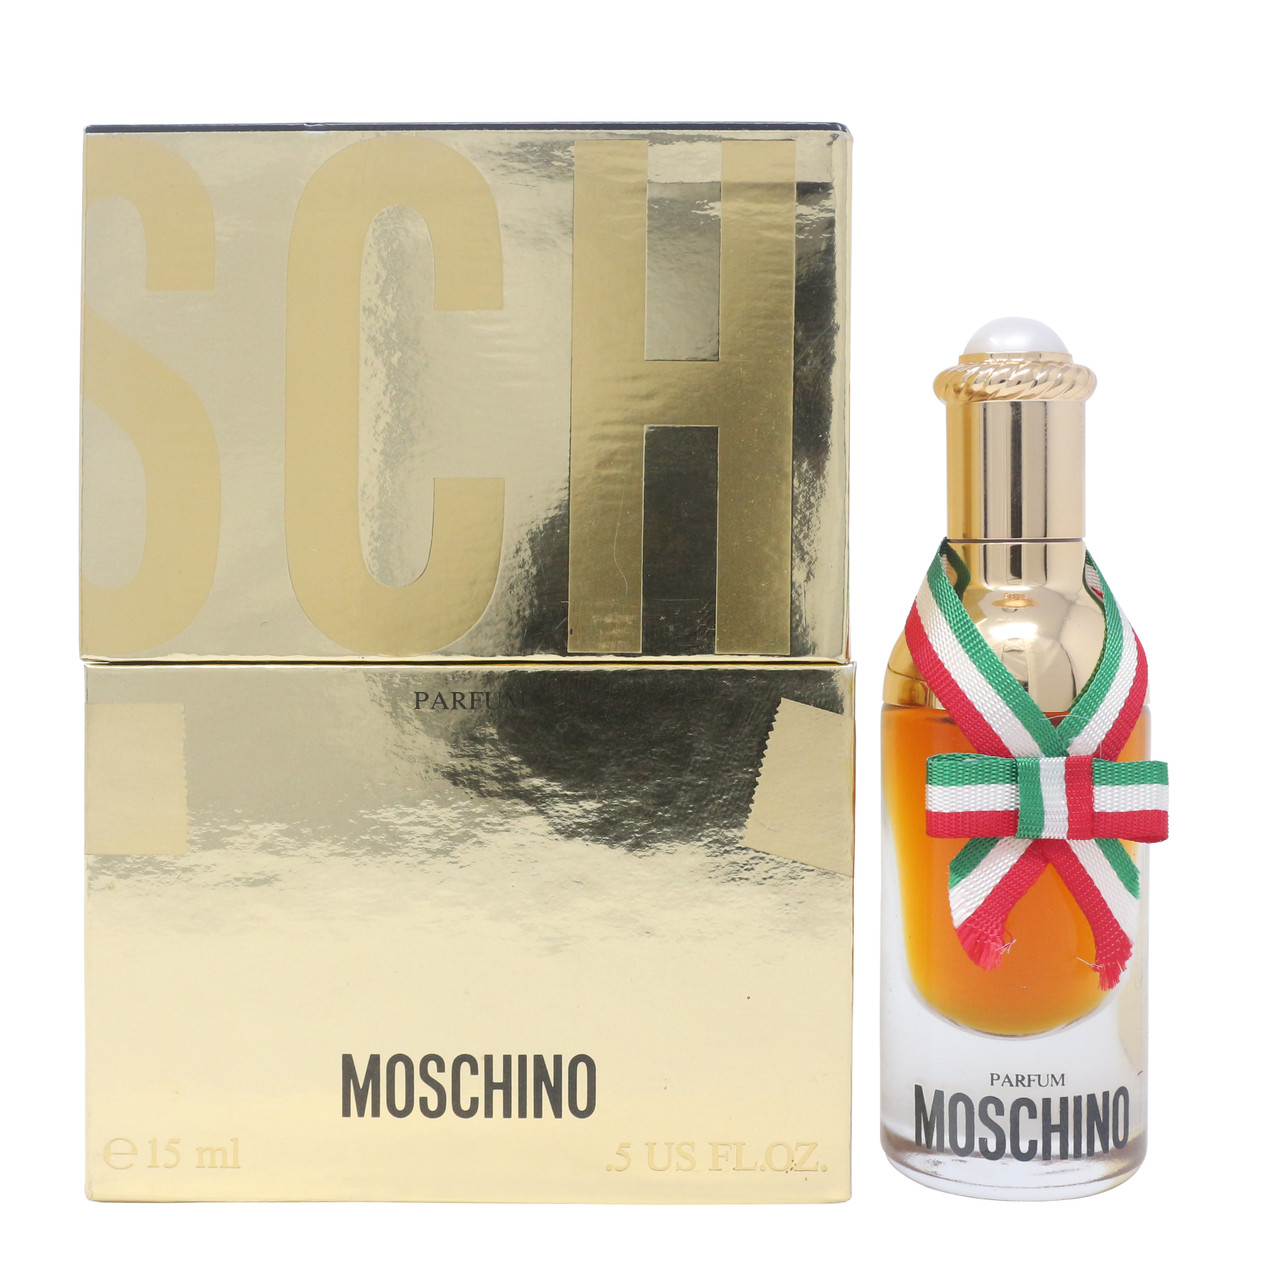 Manhattan tong marketing Moschino by Moschino Parfum/Perfume 0.5oz/15ml Splash New In Box